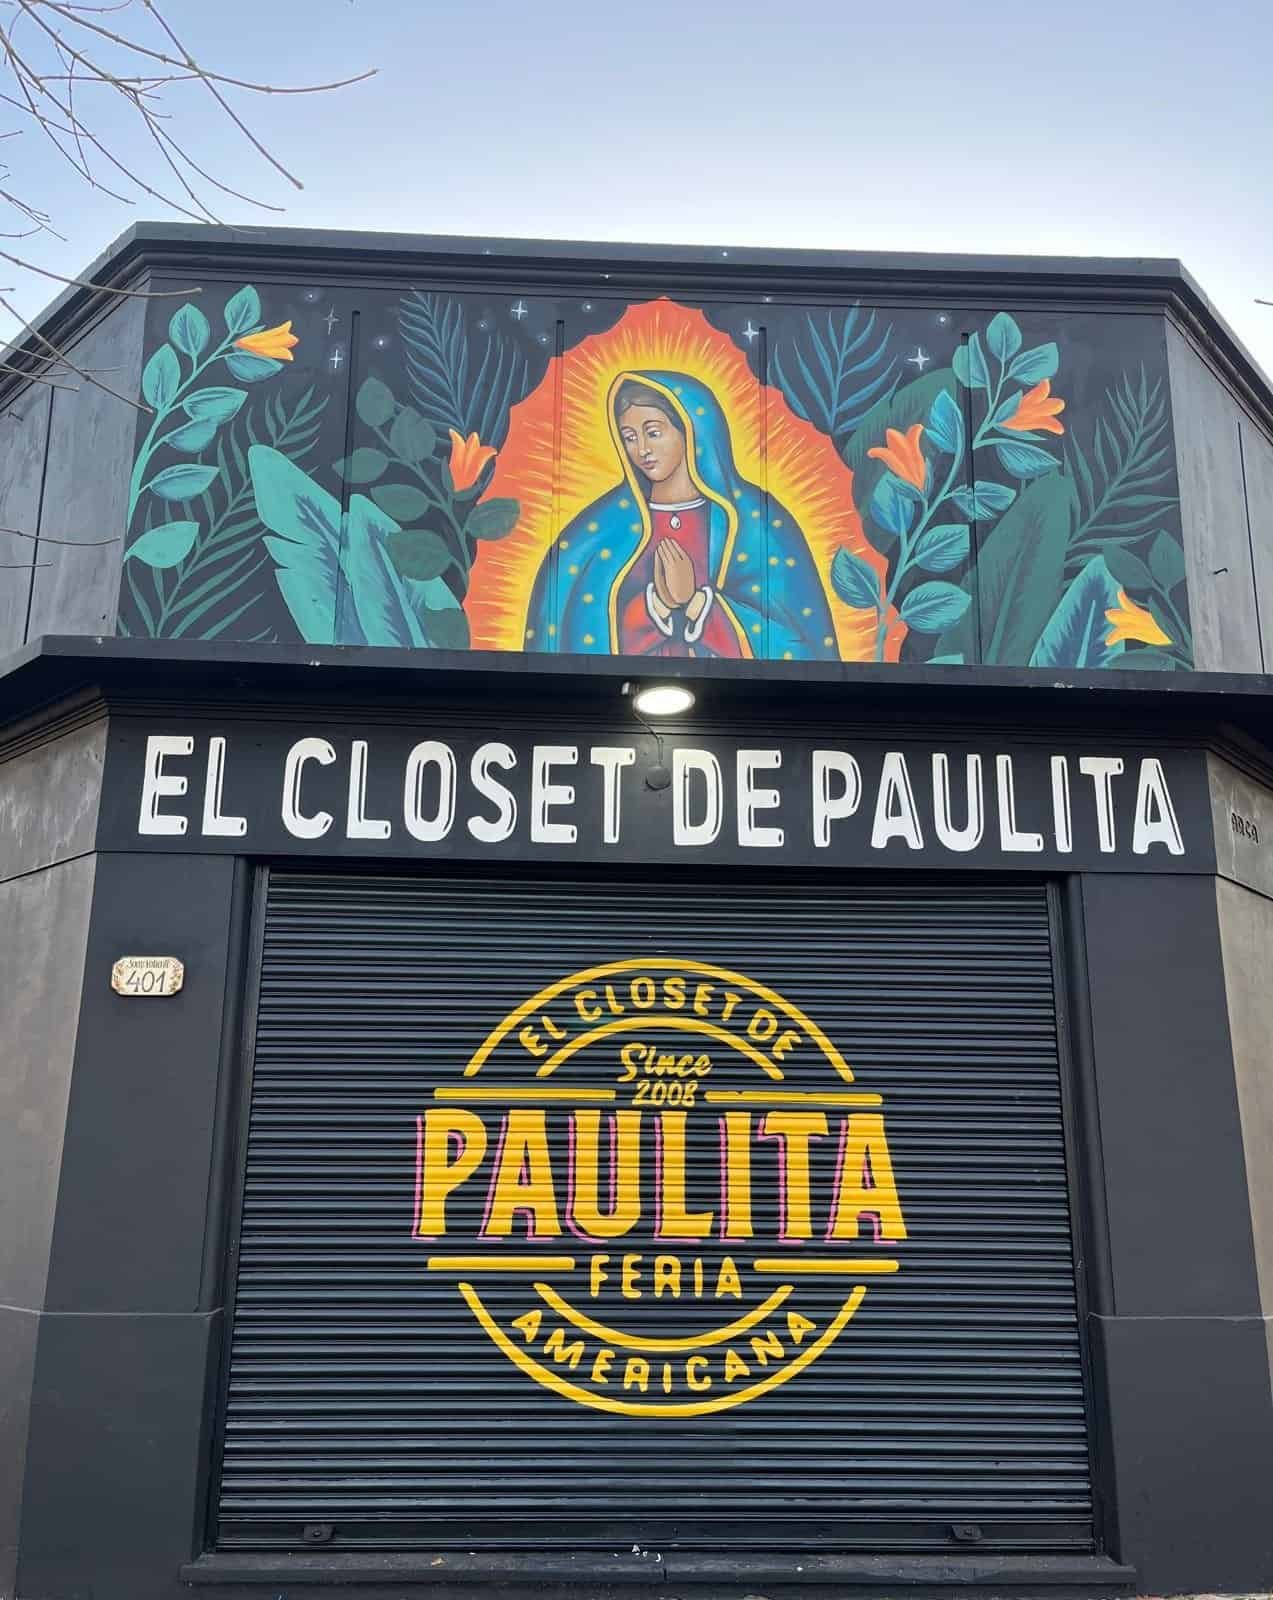 El closet de Paulita”: desde la feria del colegio hasta dos locales en zona - Plushlamour Magazine